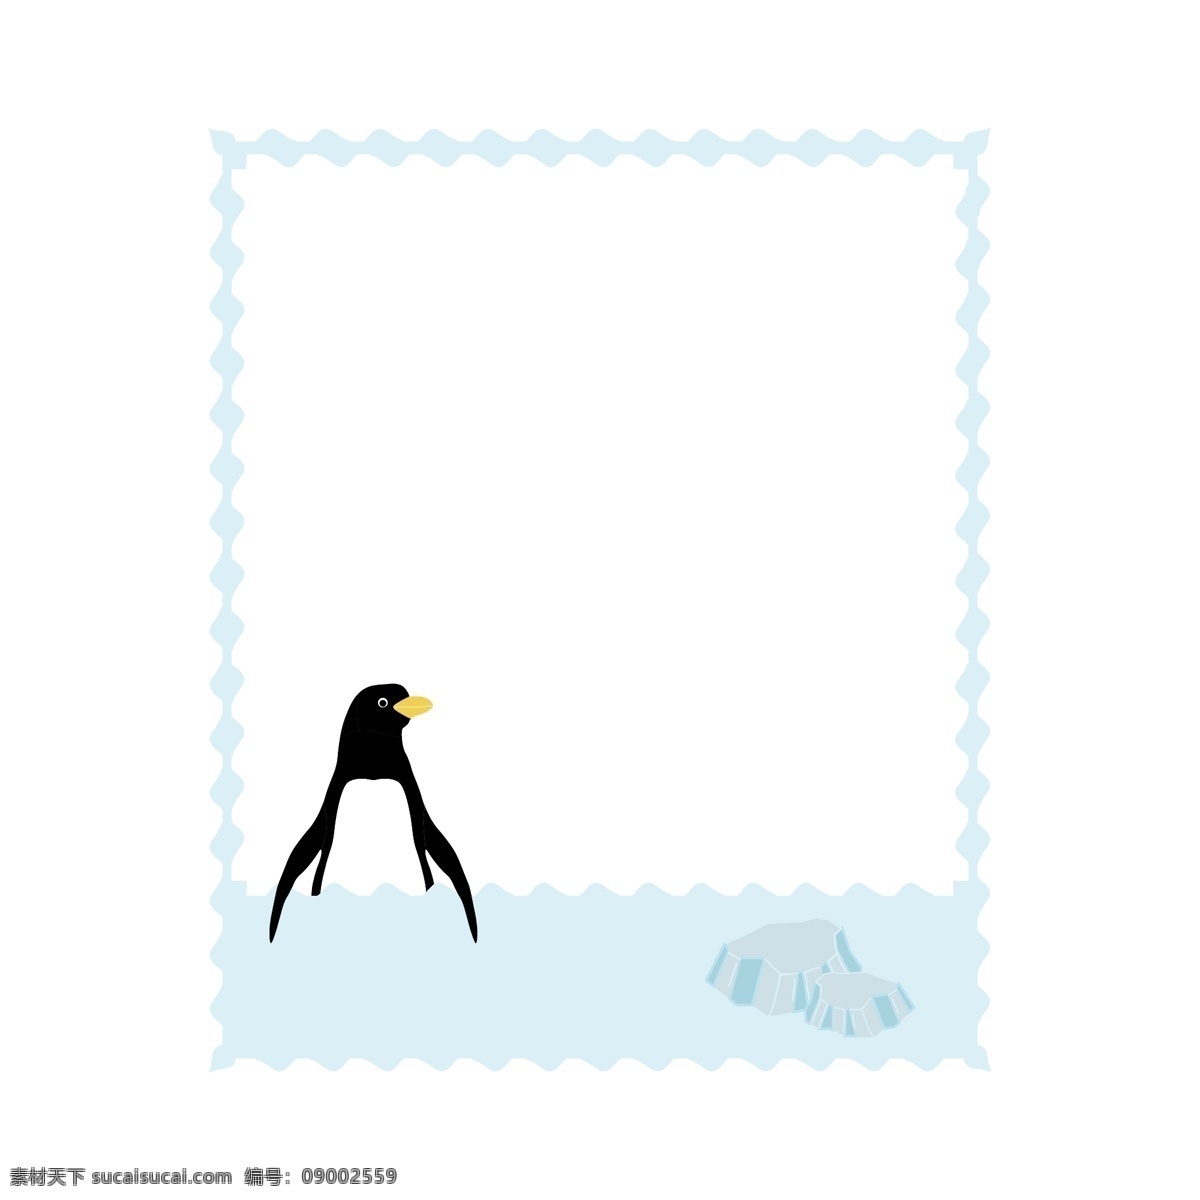 珍稀 动物保护 日 珍惜 动物 构成 的卡 通 边框 珍稀动物 保护 企鹅 卡通 冰川